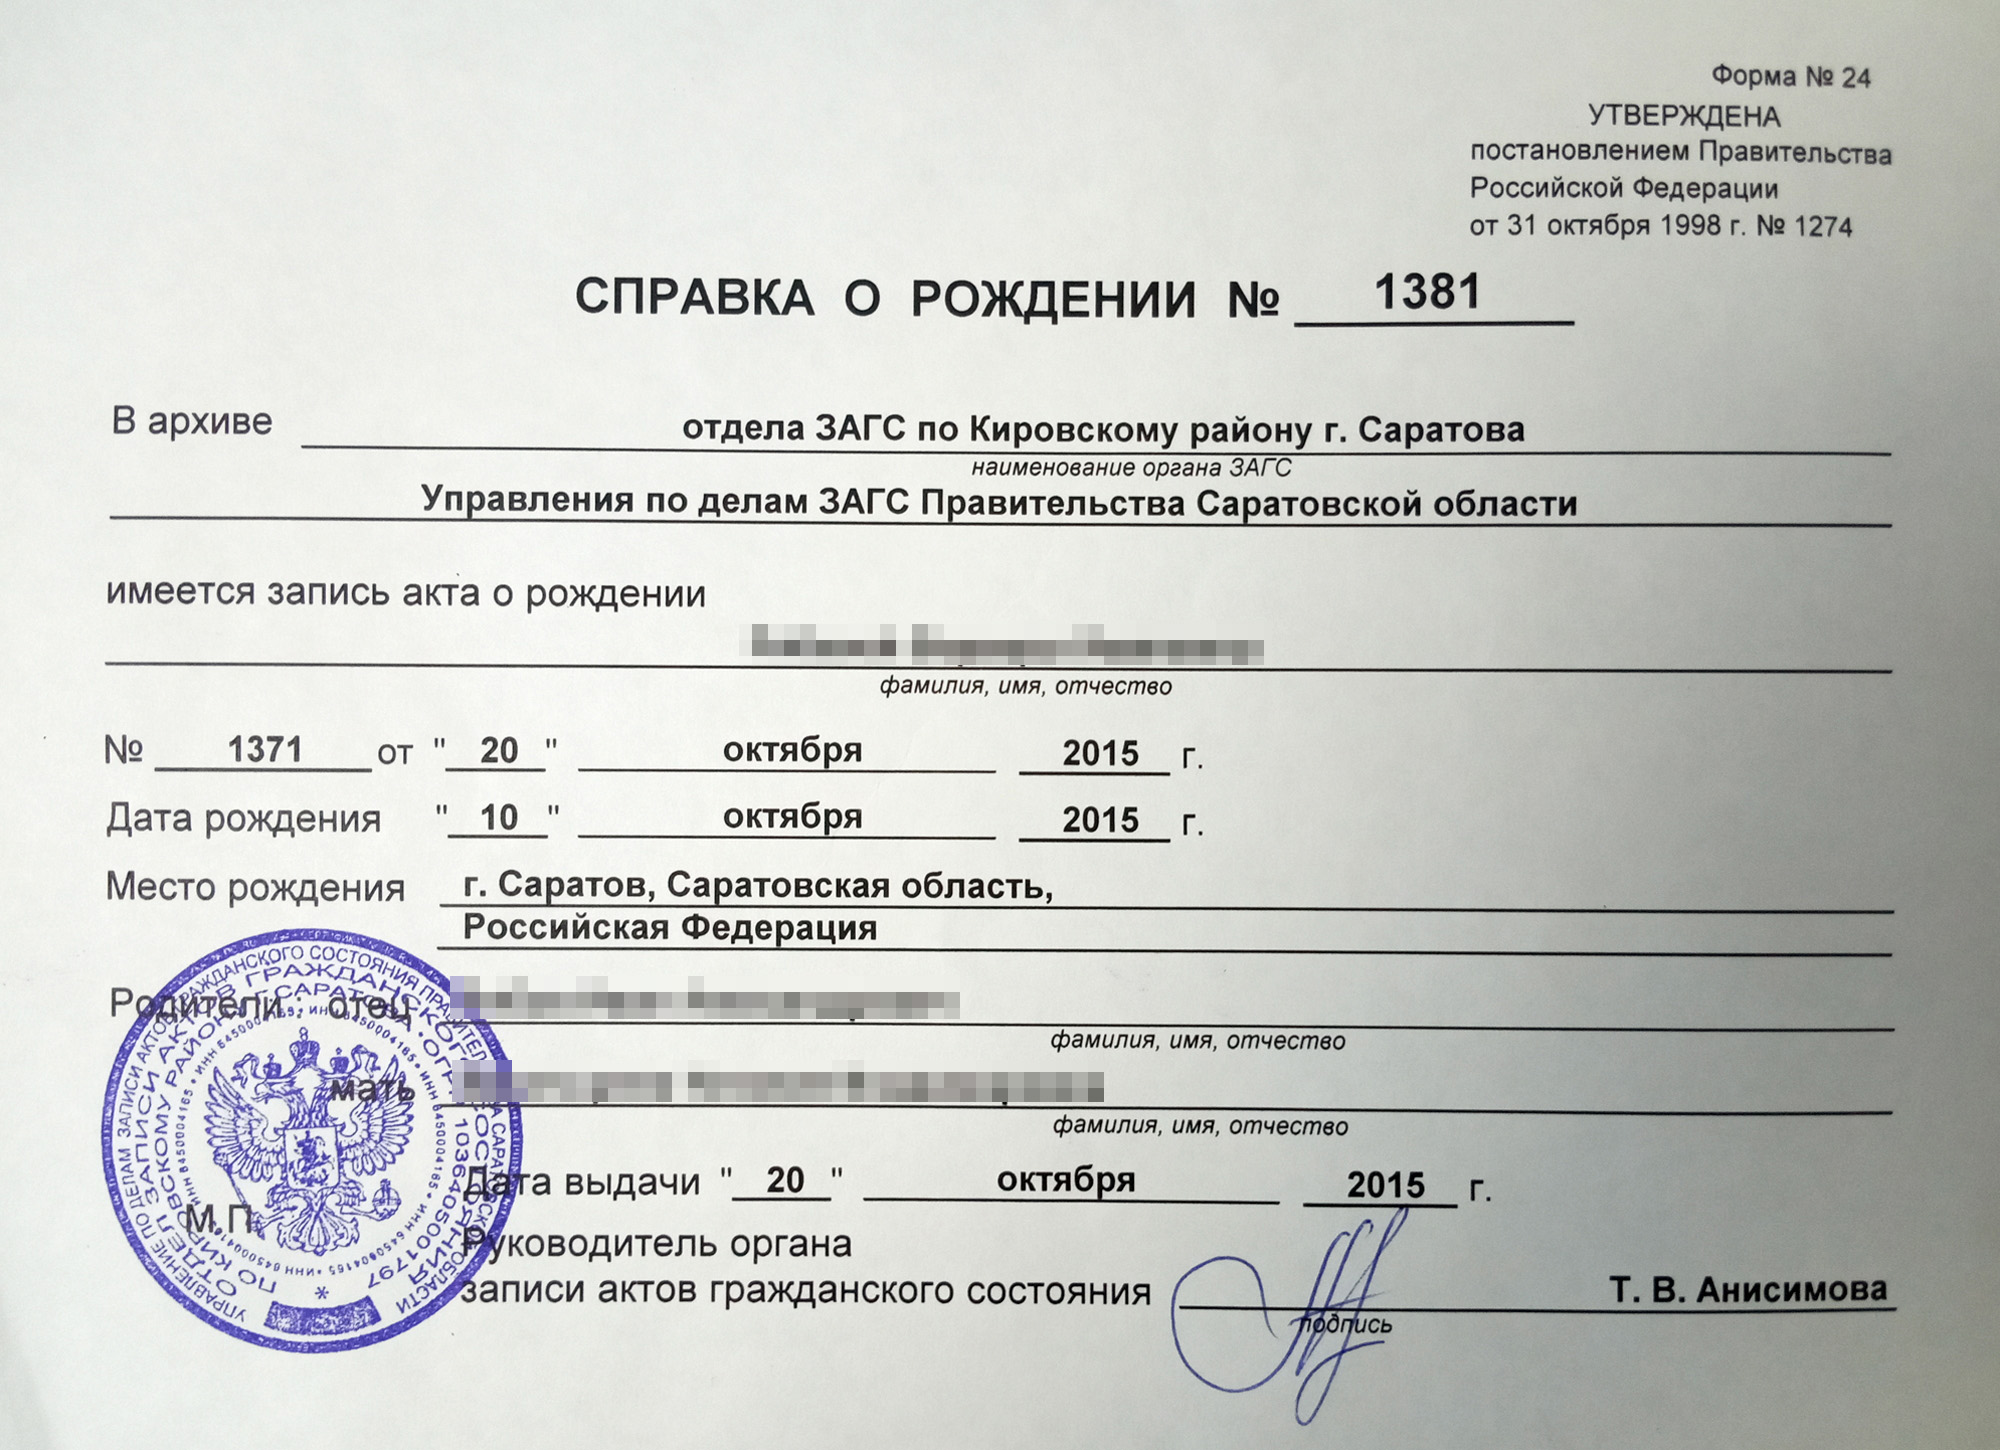 банк втб кредит до 3 000 000 рублей